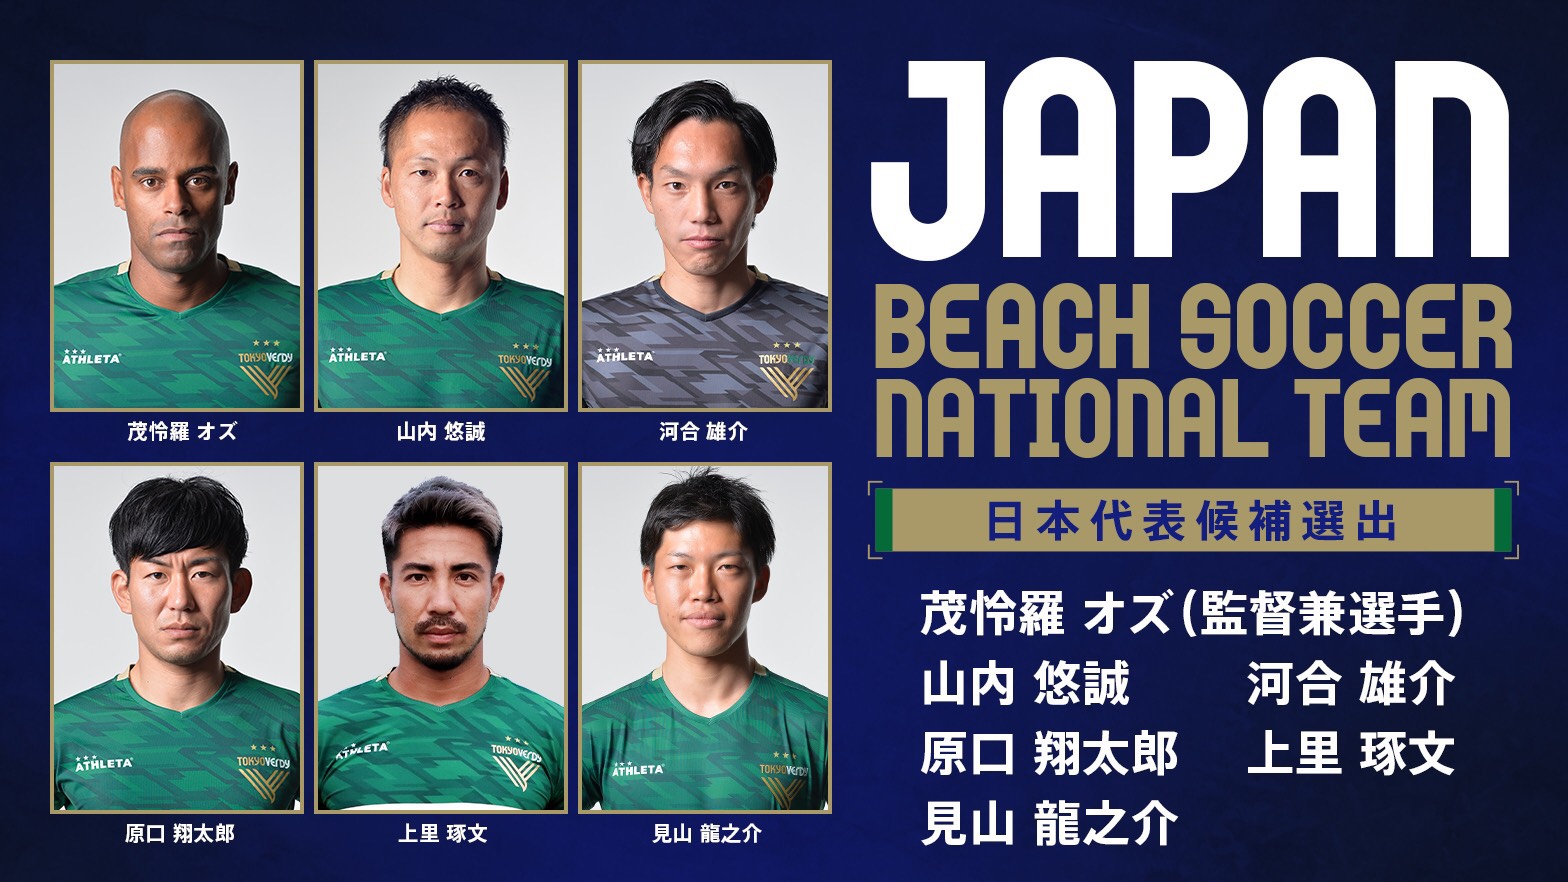 11 06 ビーチサッカー ビーチサッカー日本代表候補トレーニングメンバーに6名選出